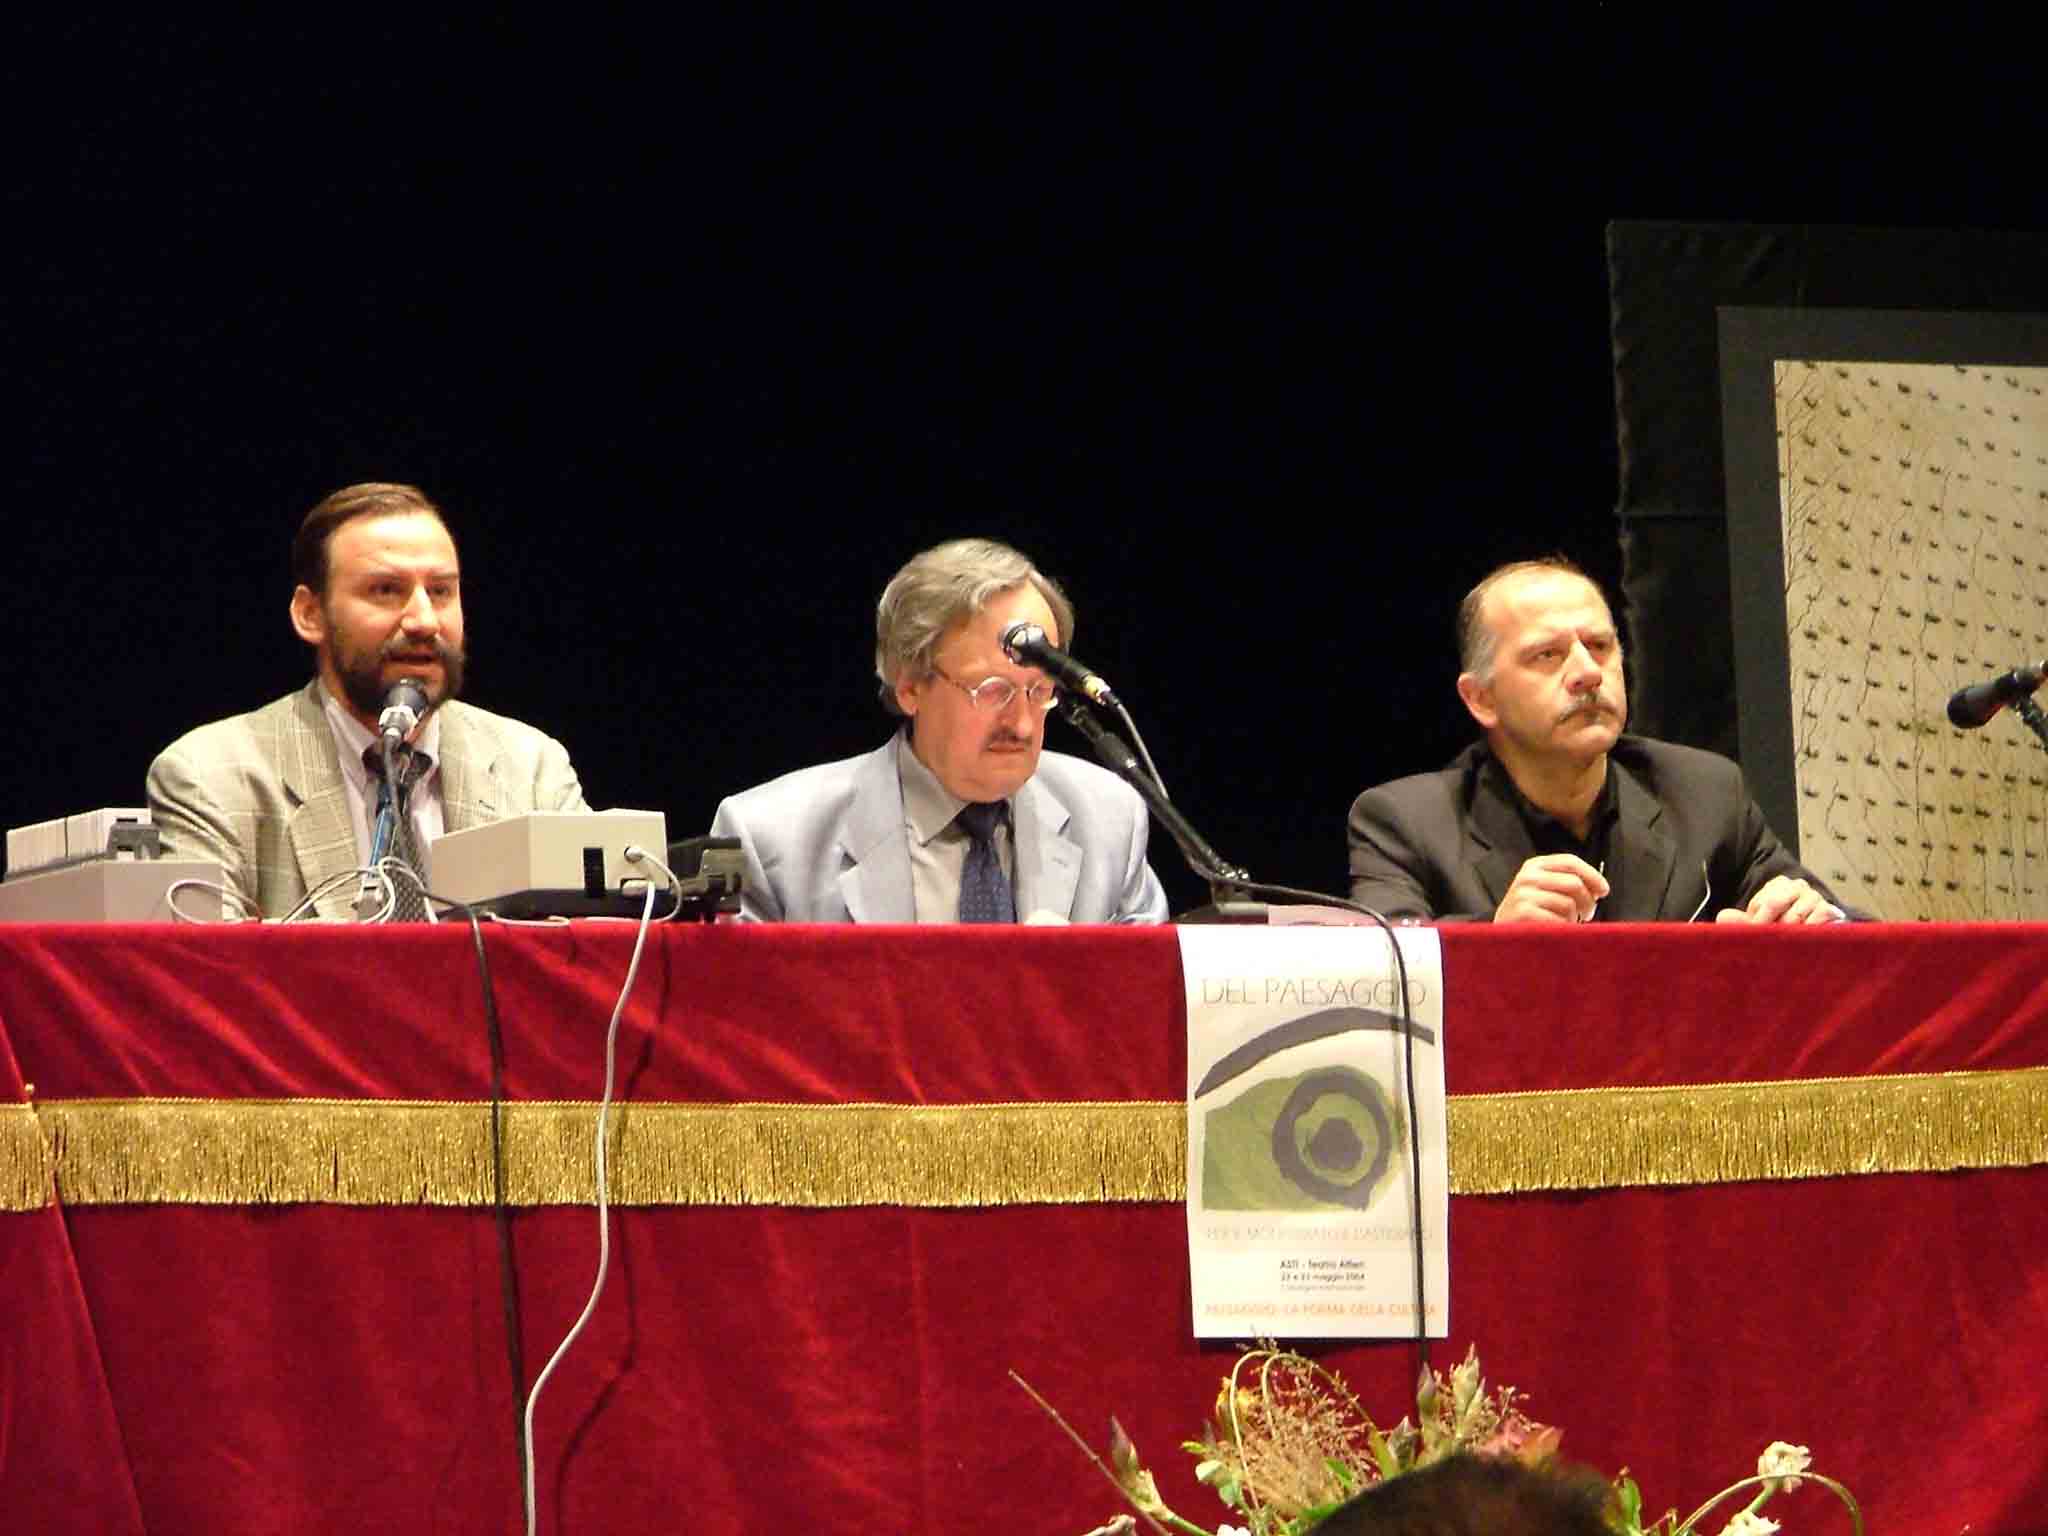 Coordinatori: Prof. Renato Bordone (in centro) e Arch. Gianni Cavallero (dx).